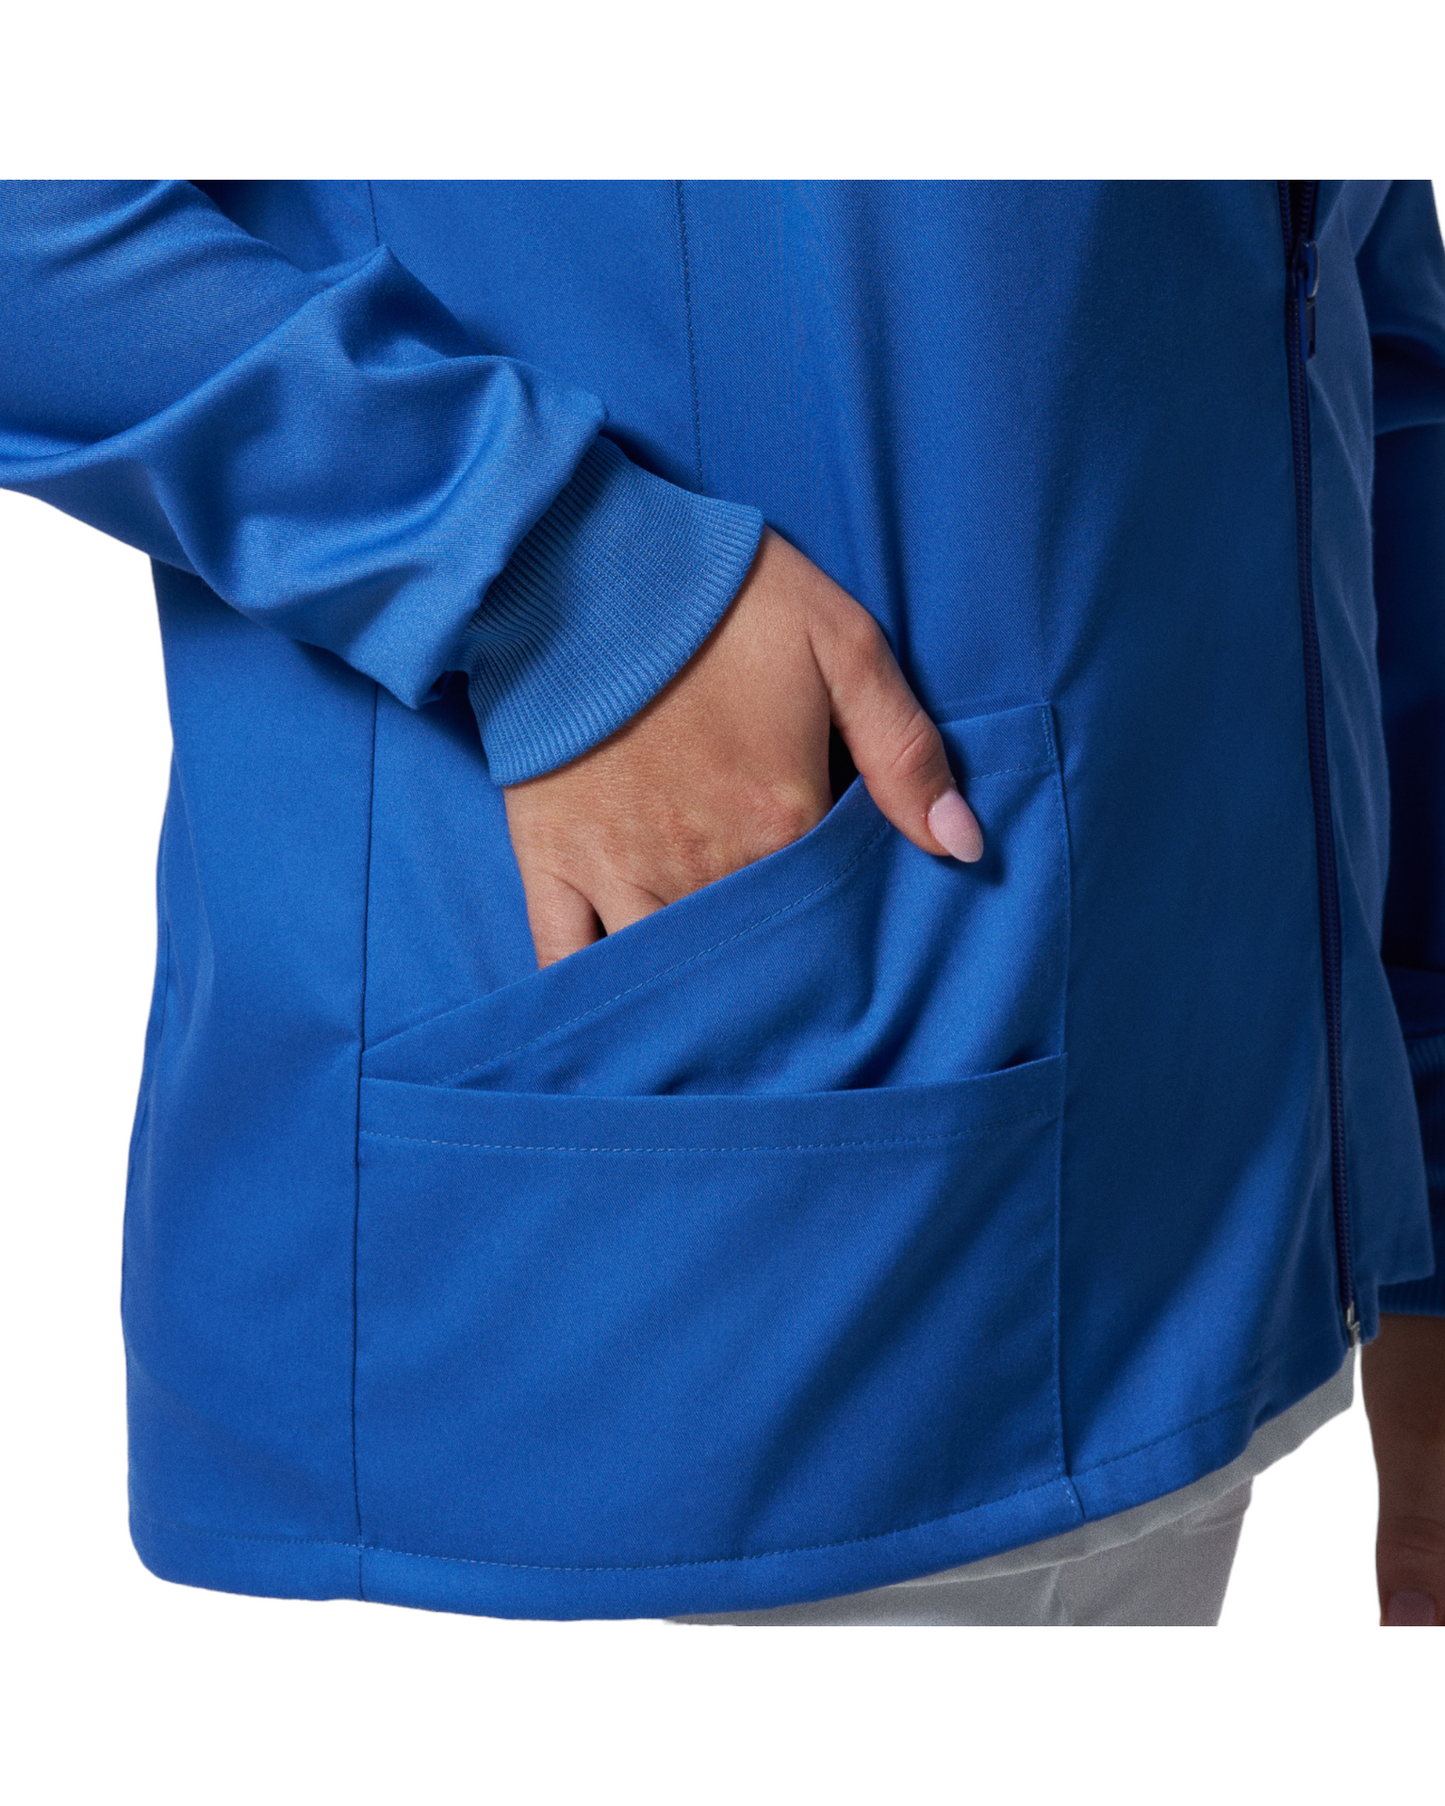 Vue des deux poches latérale droite de la veste de survêtement pour femmes Landau Proflex #LJ701-OS